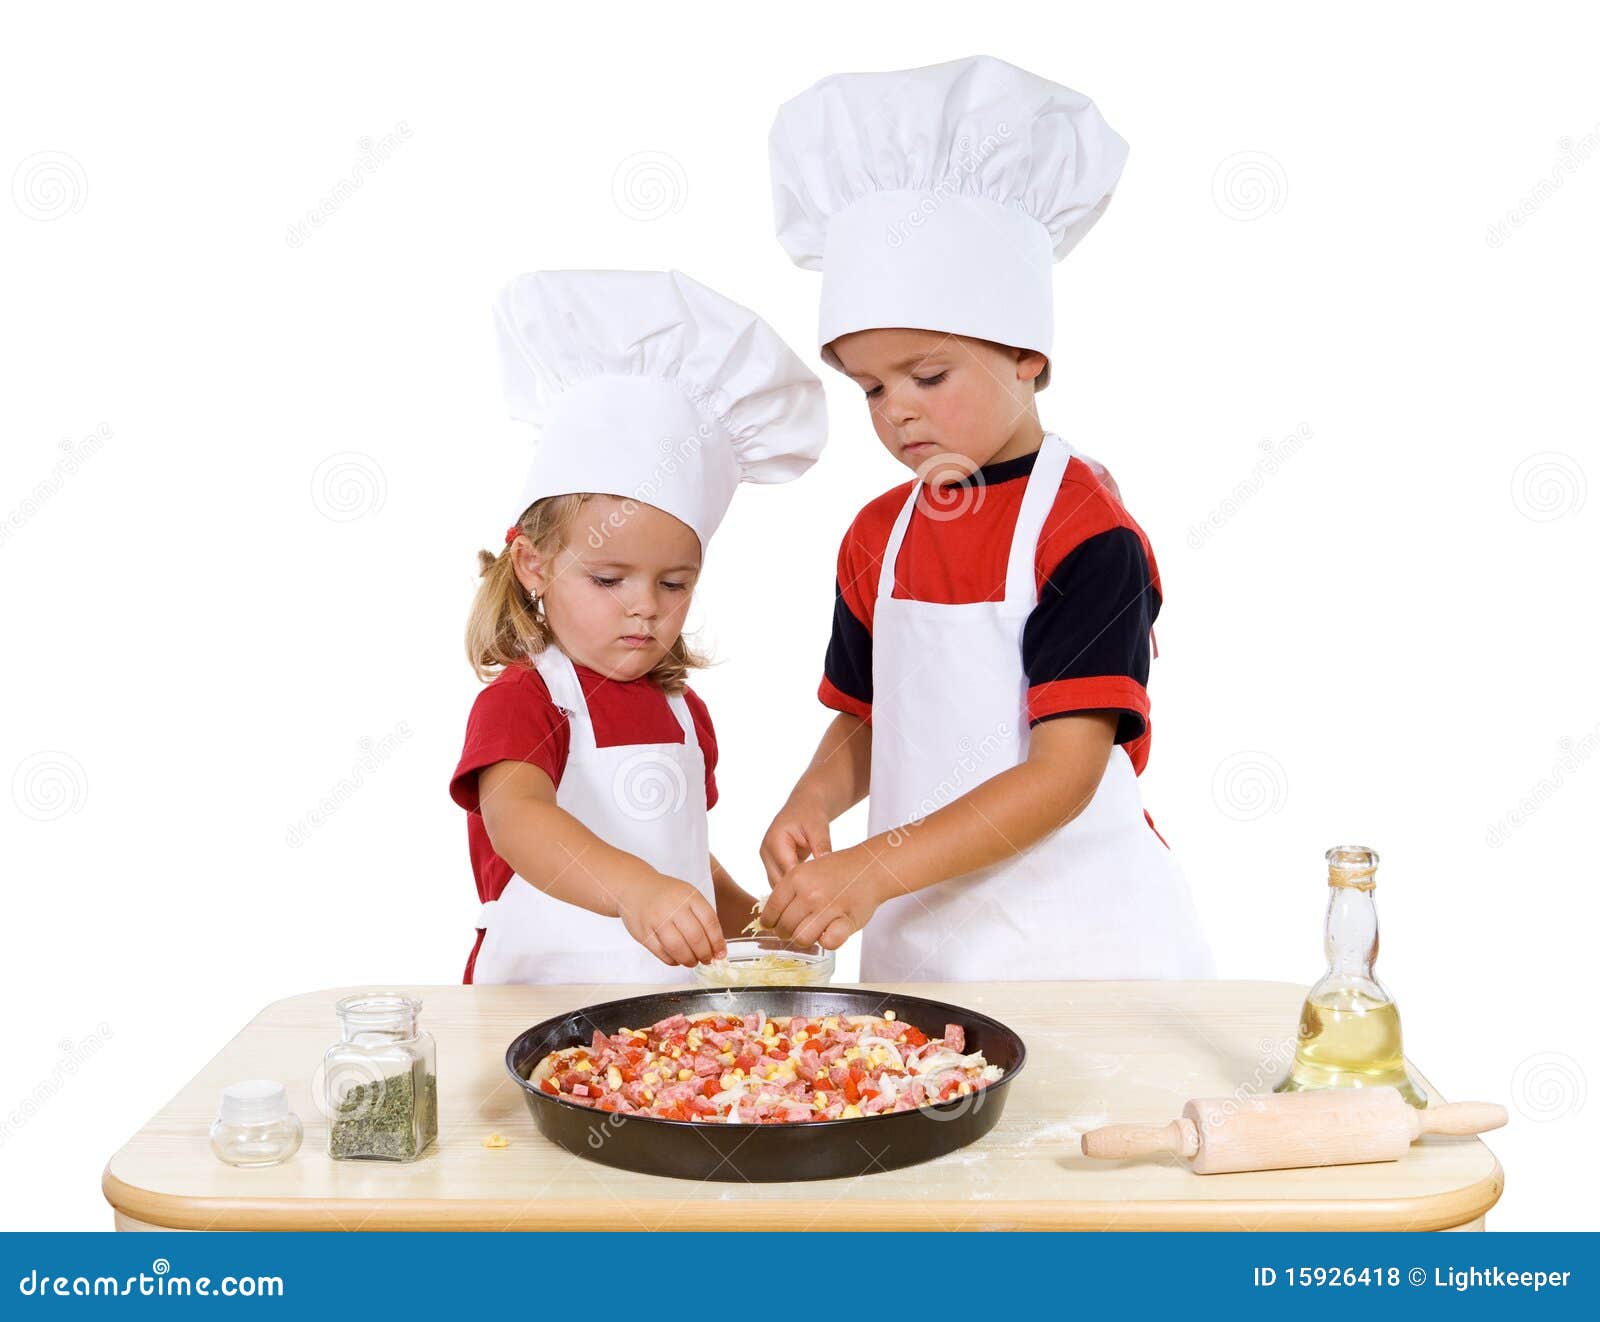 kids preparing a pizza